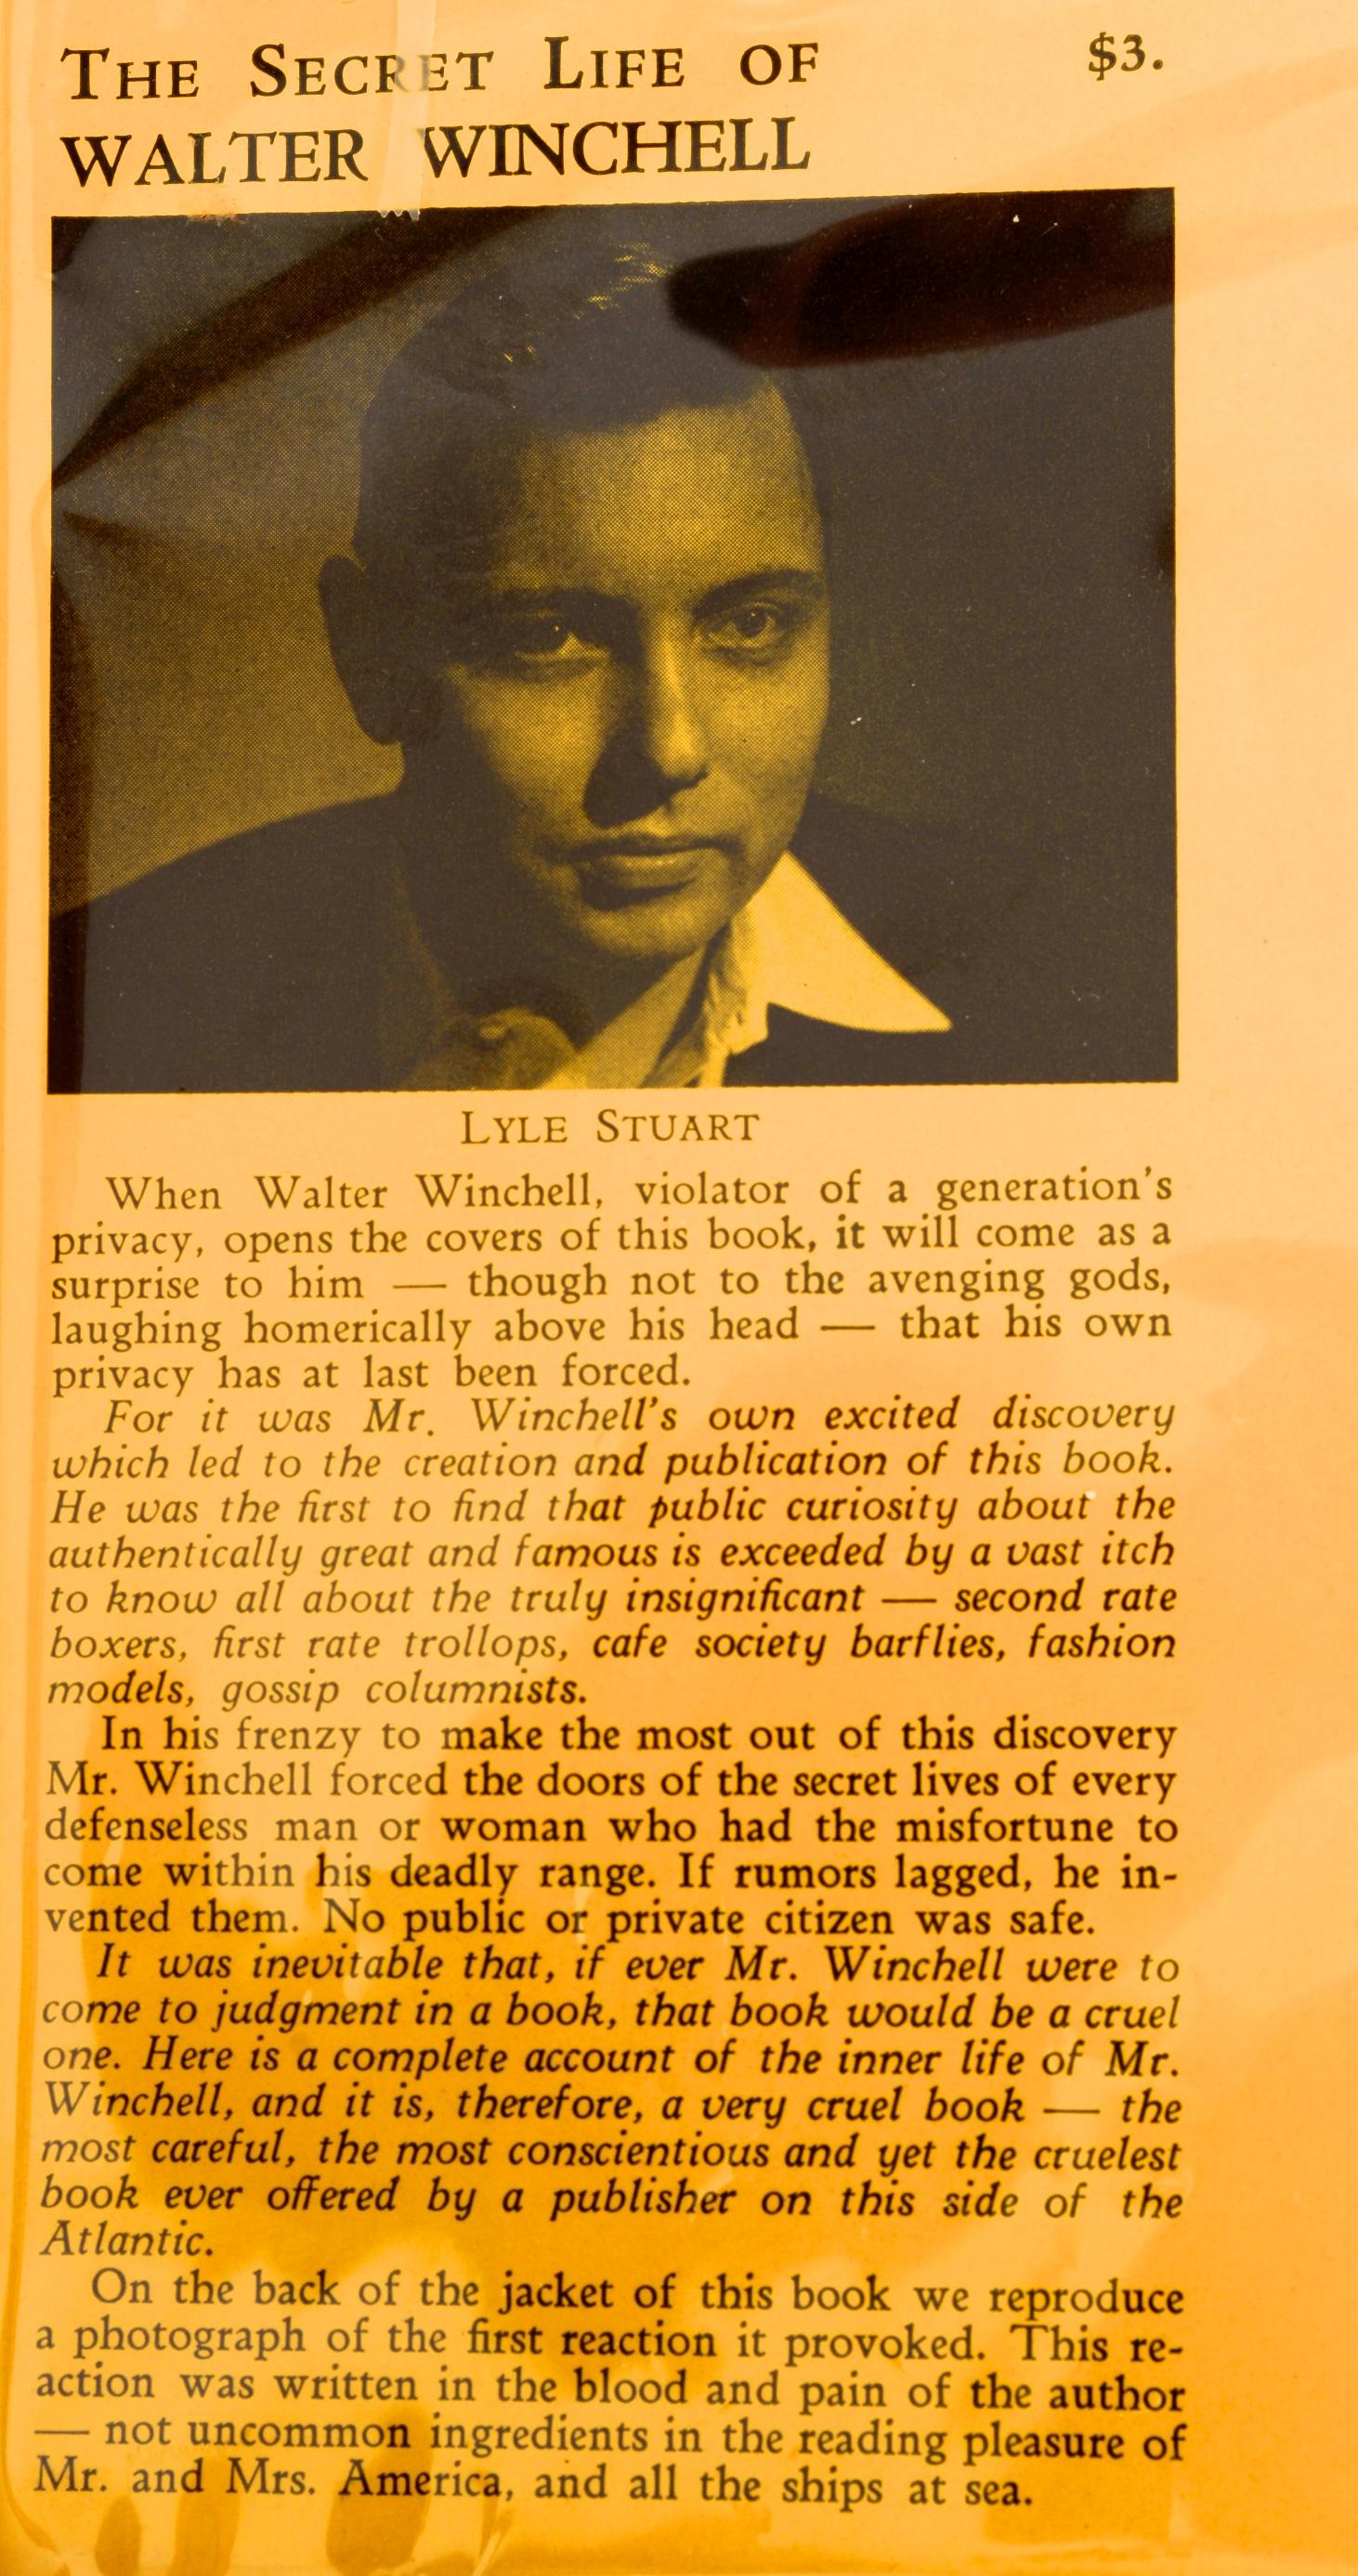 La vie secrète de Walter Winchell par Lyle Stuart. Boar's Head Books, New York, 1953. Première édition reliée avec une jaquette couverte par Brodart. Le livre identifie les lignes de faille entre les ragots et les informations, entre la célébrité et